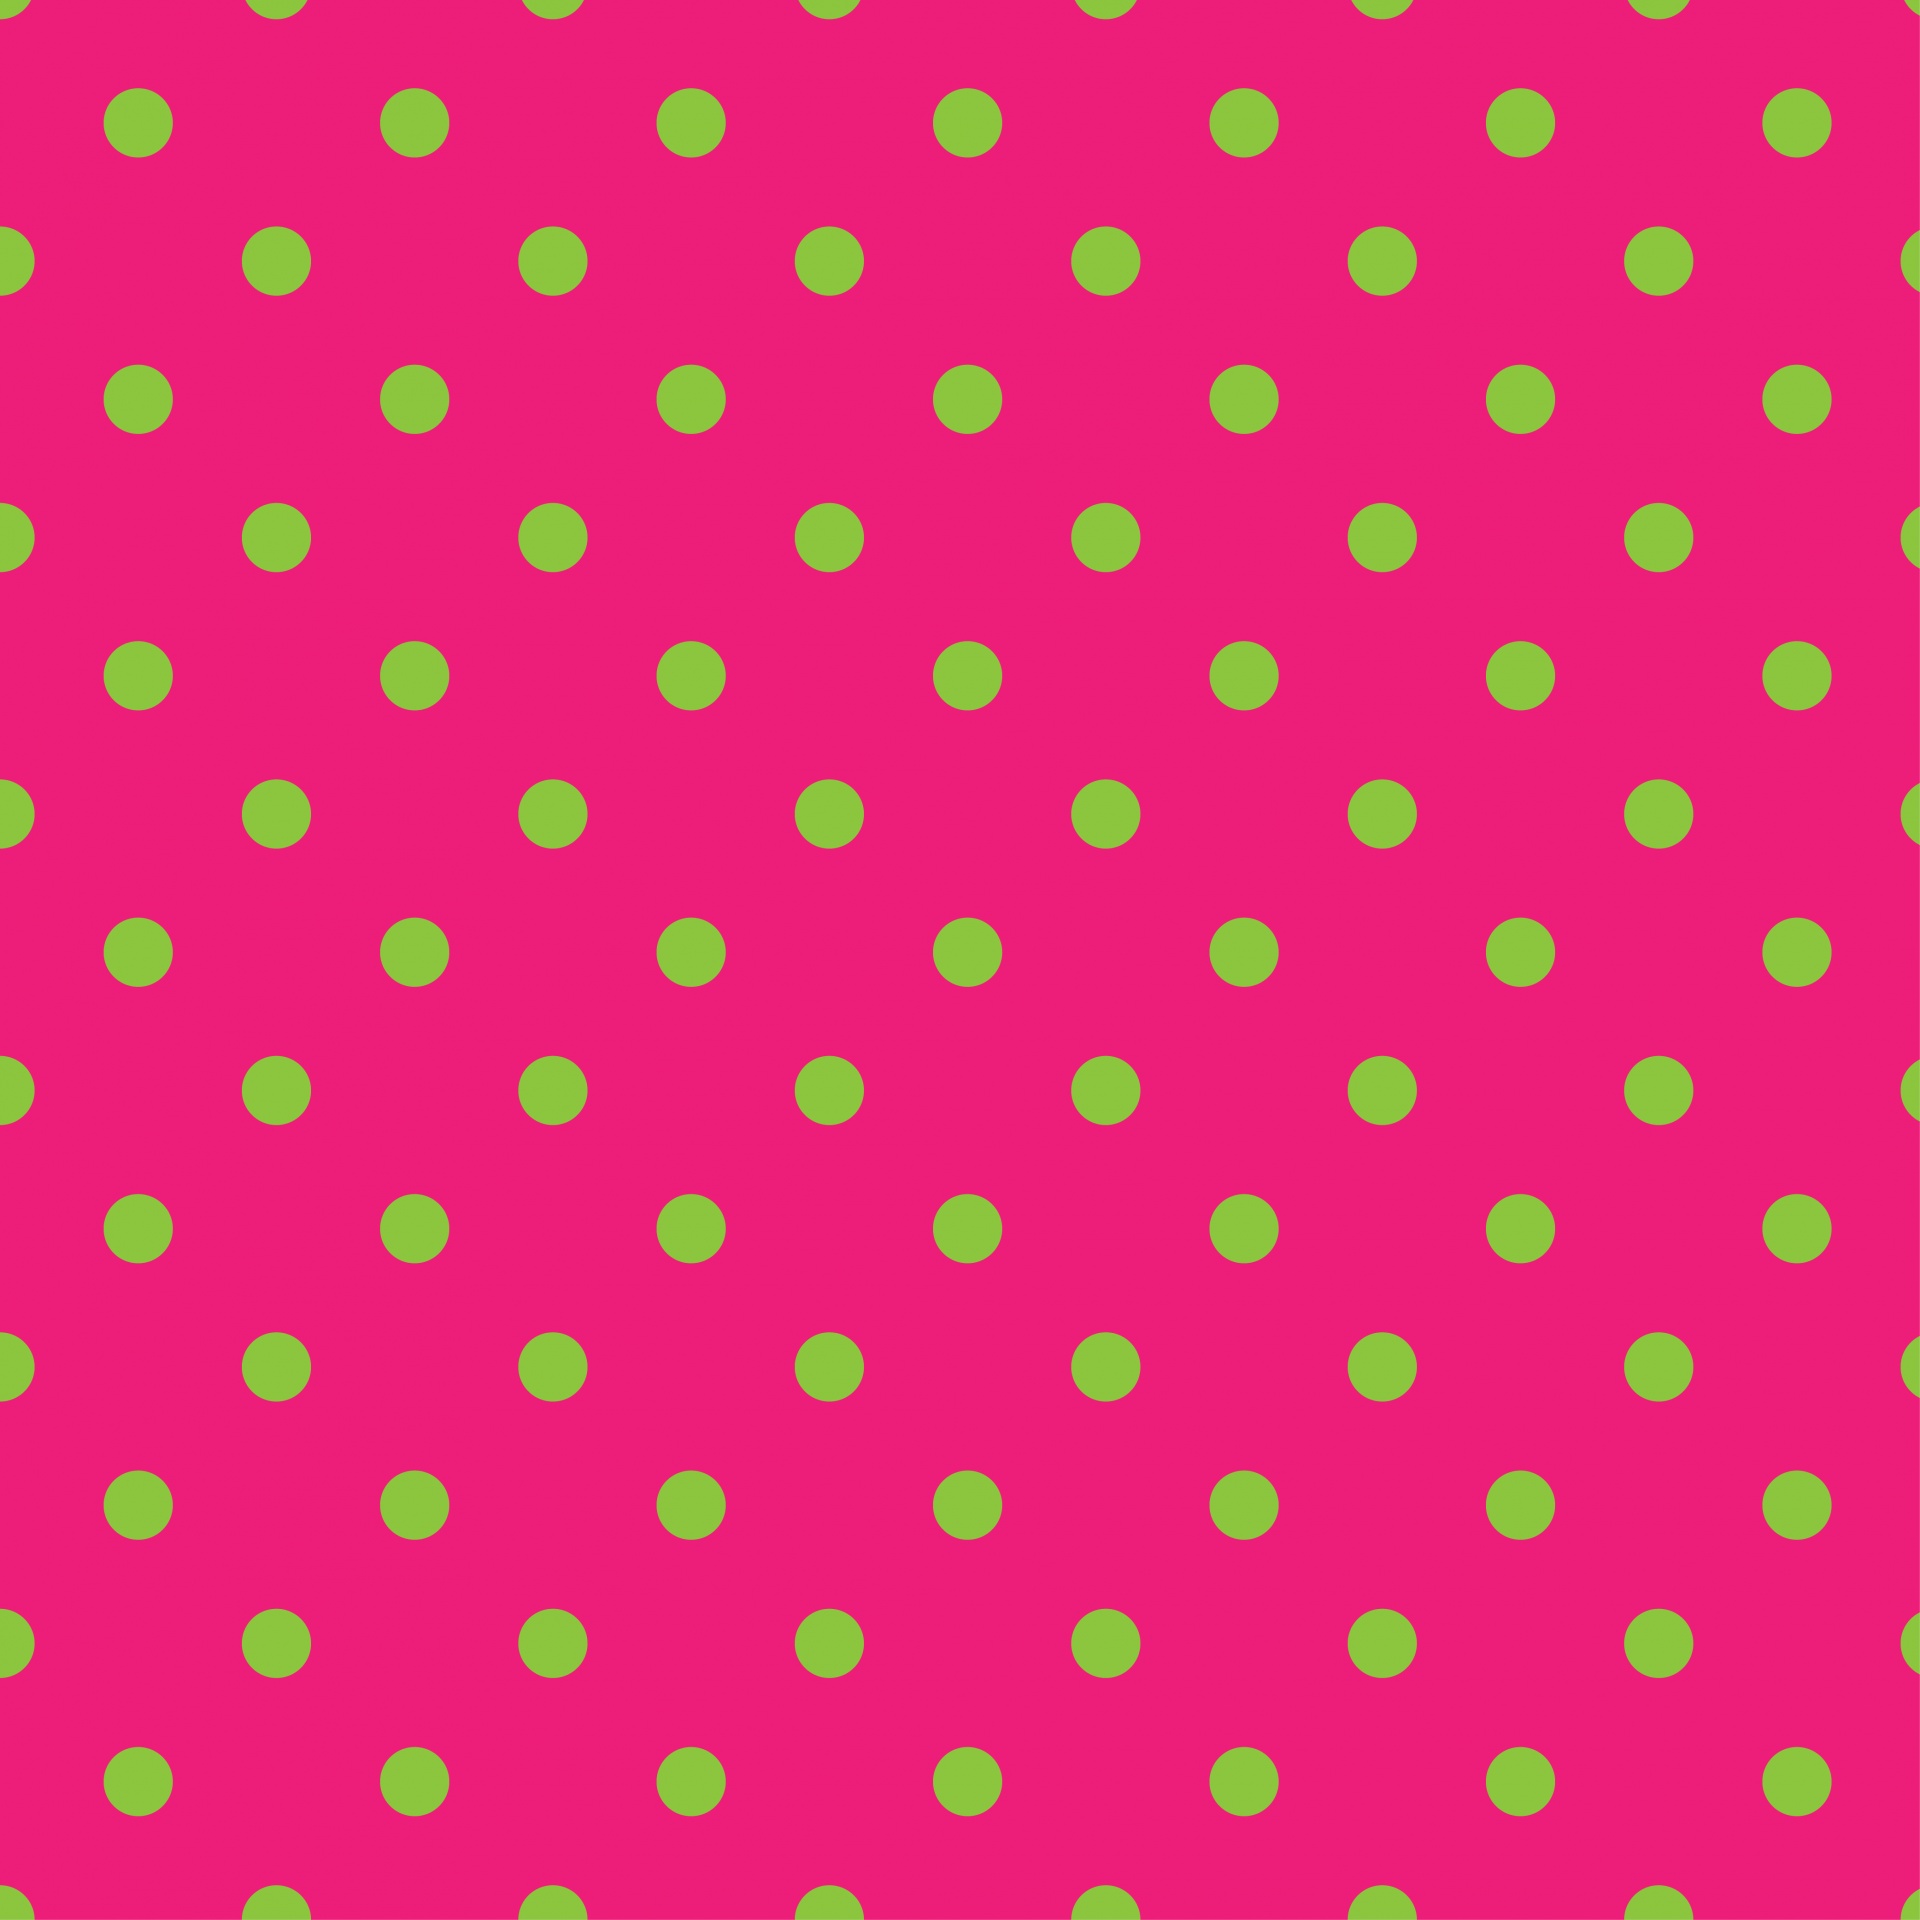 polka dots pink green free photo